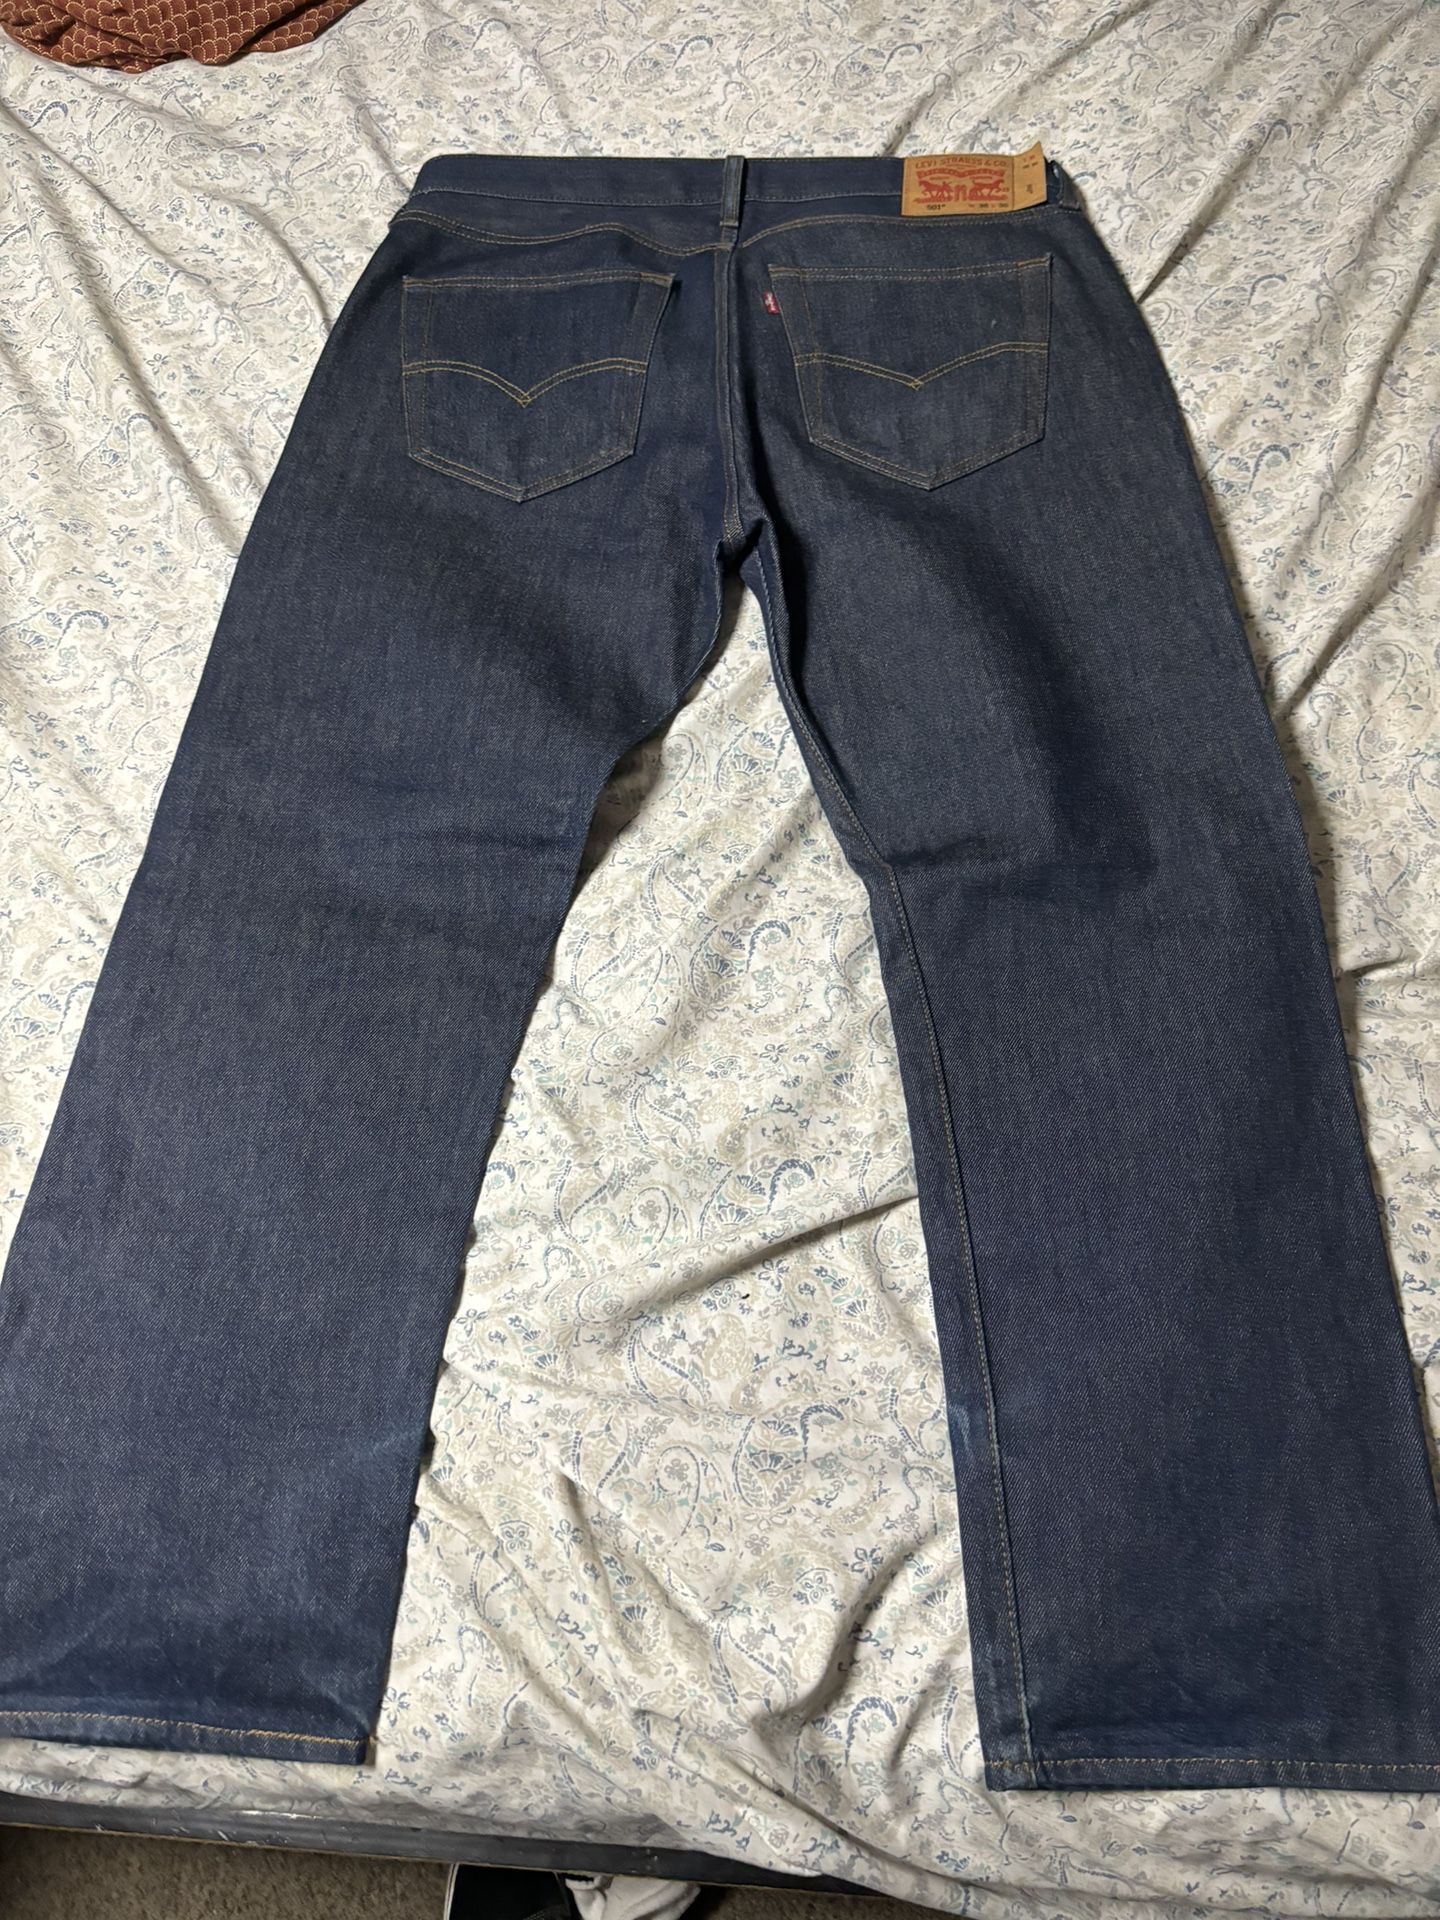 Levi’s 501 Men’s Jeans Size 36